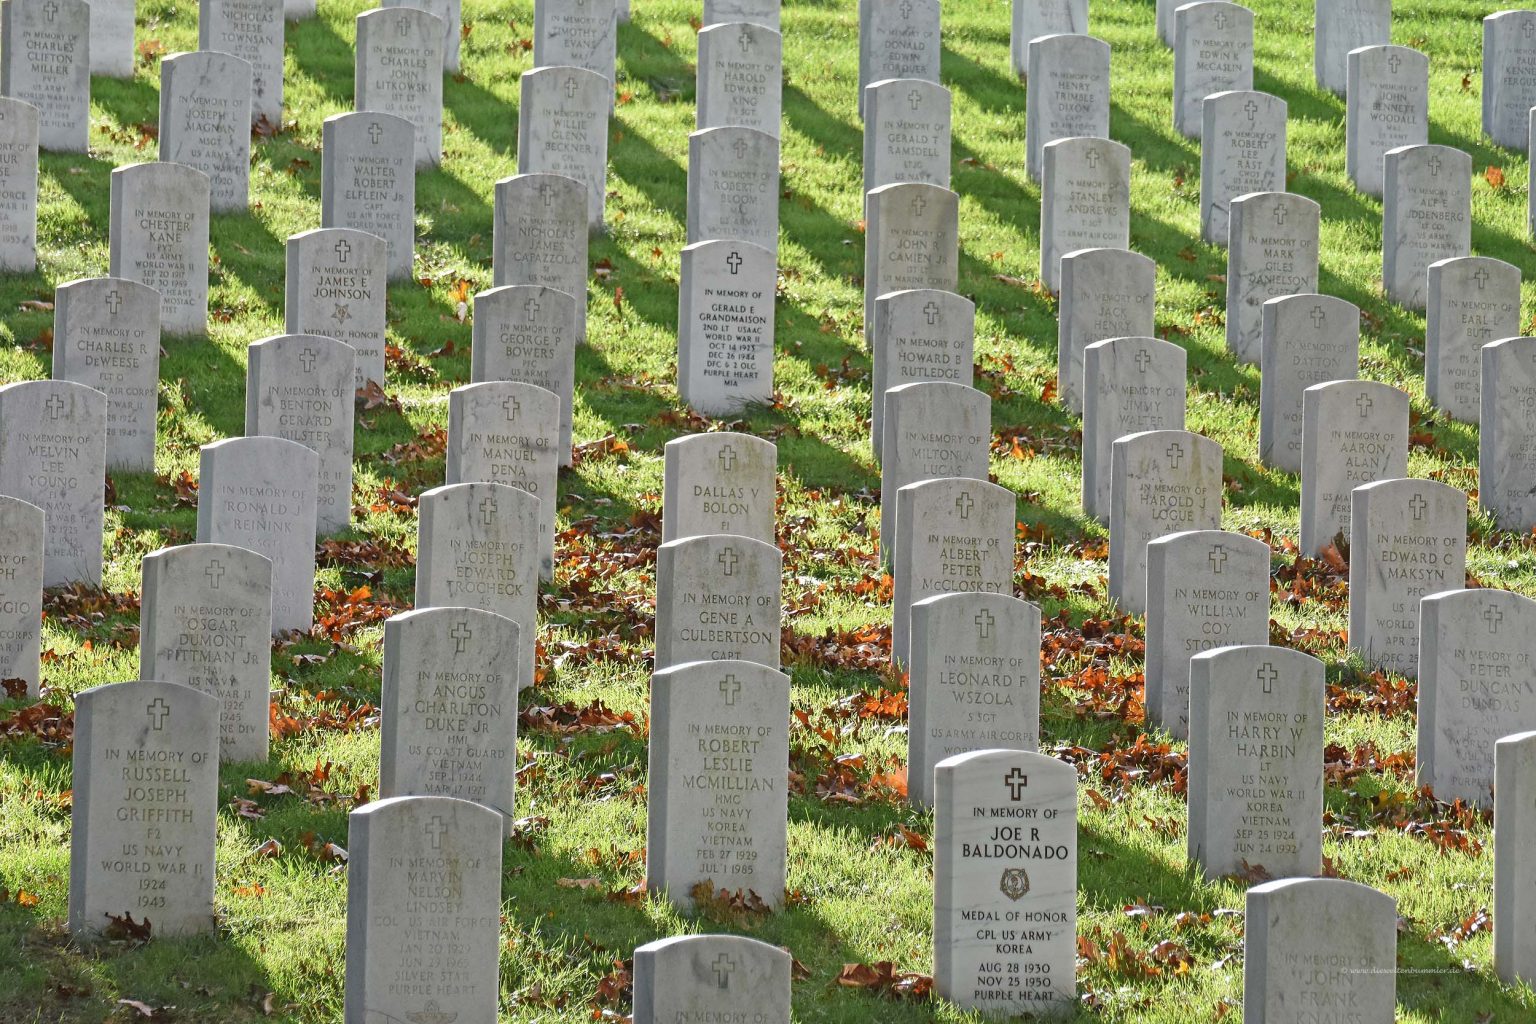 Grabsteine auf dem Friedhof in Arlington